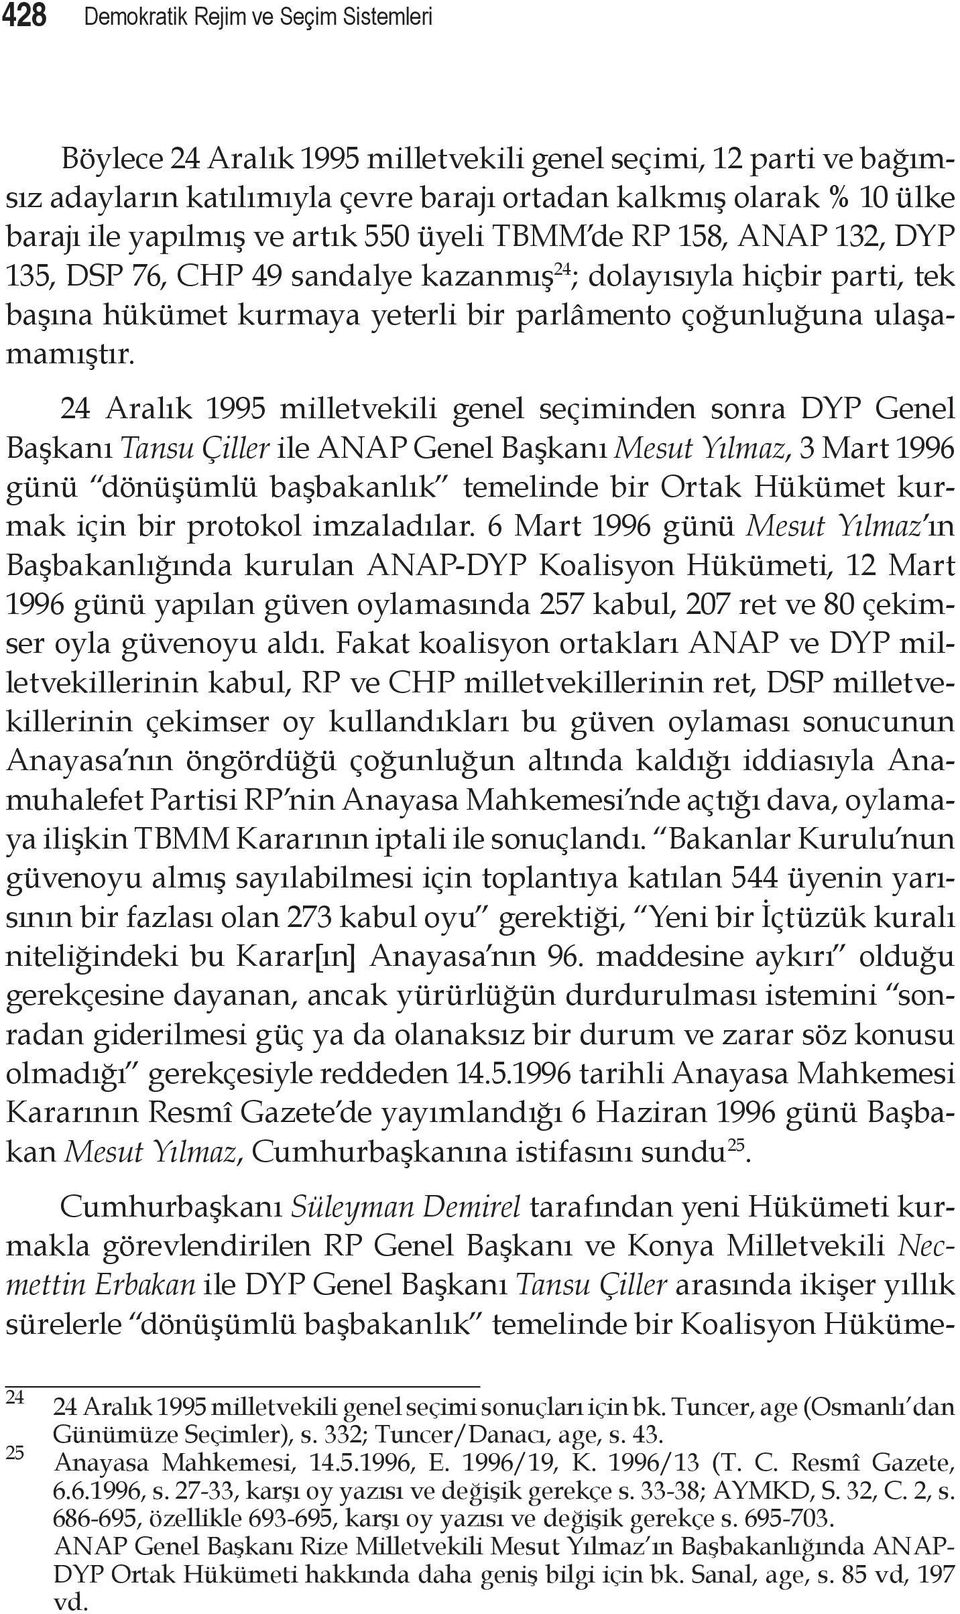 24 Aralık 1995 milletvekili genel seçiminden sonra DYP Genel Başkanı Tansu Çiller ile ANAP Genel Başkanı Mesut Yılmaz, 3 Mart 1996 günü dönüşümlü başbakanlık temelinde bir Ortak Hükümet kurmak için